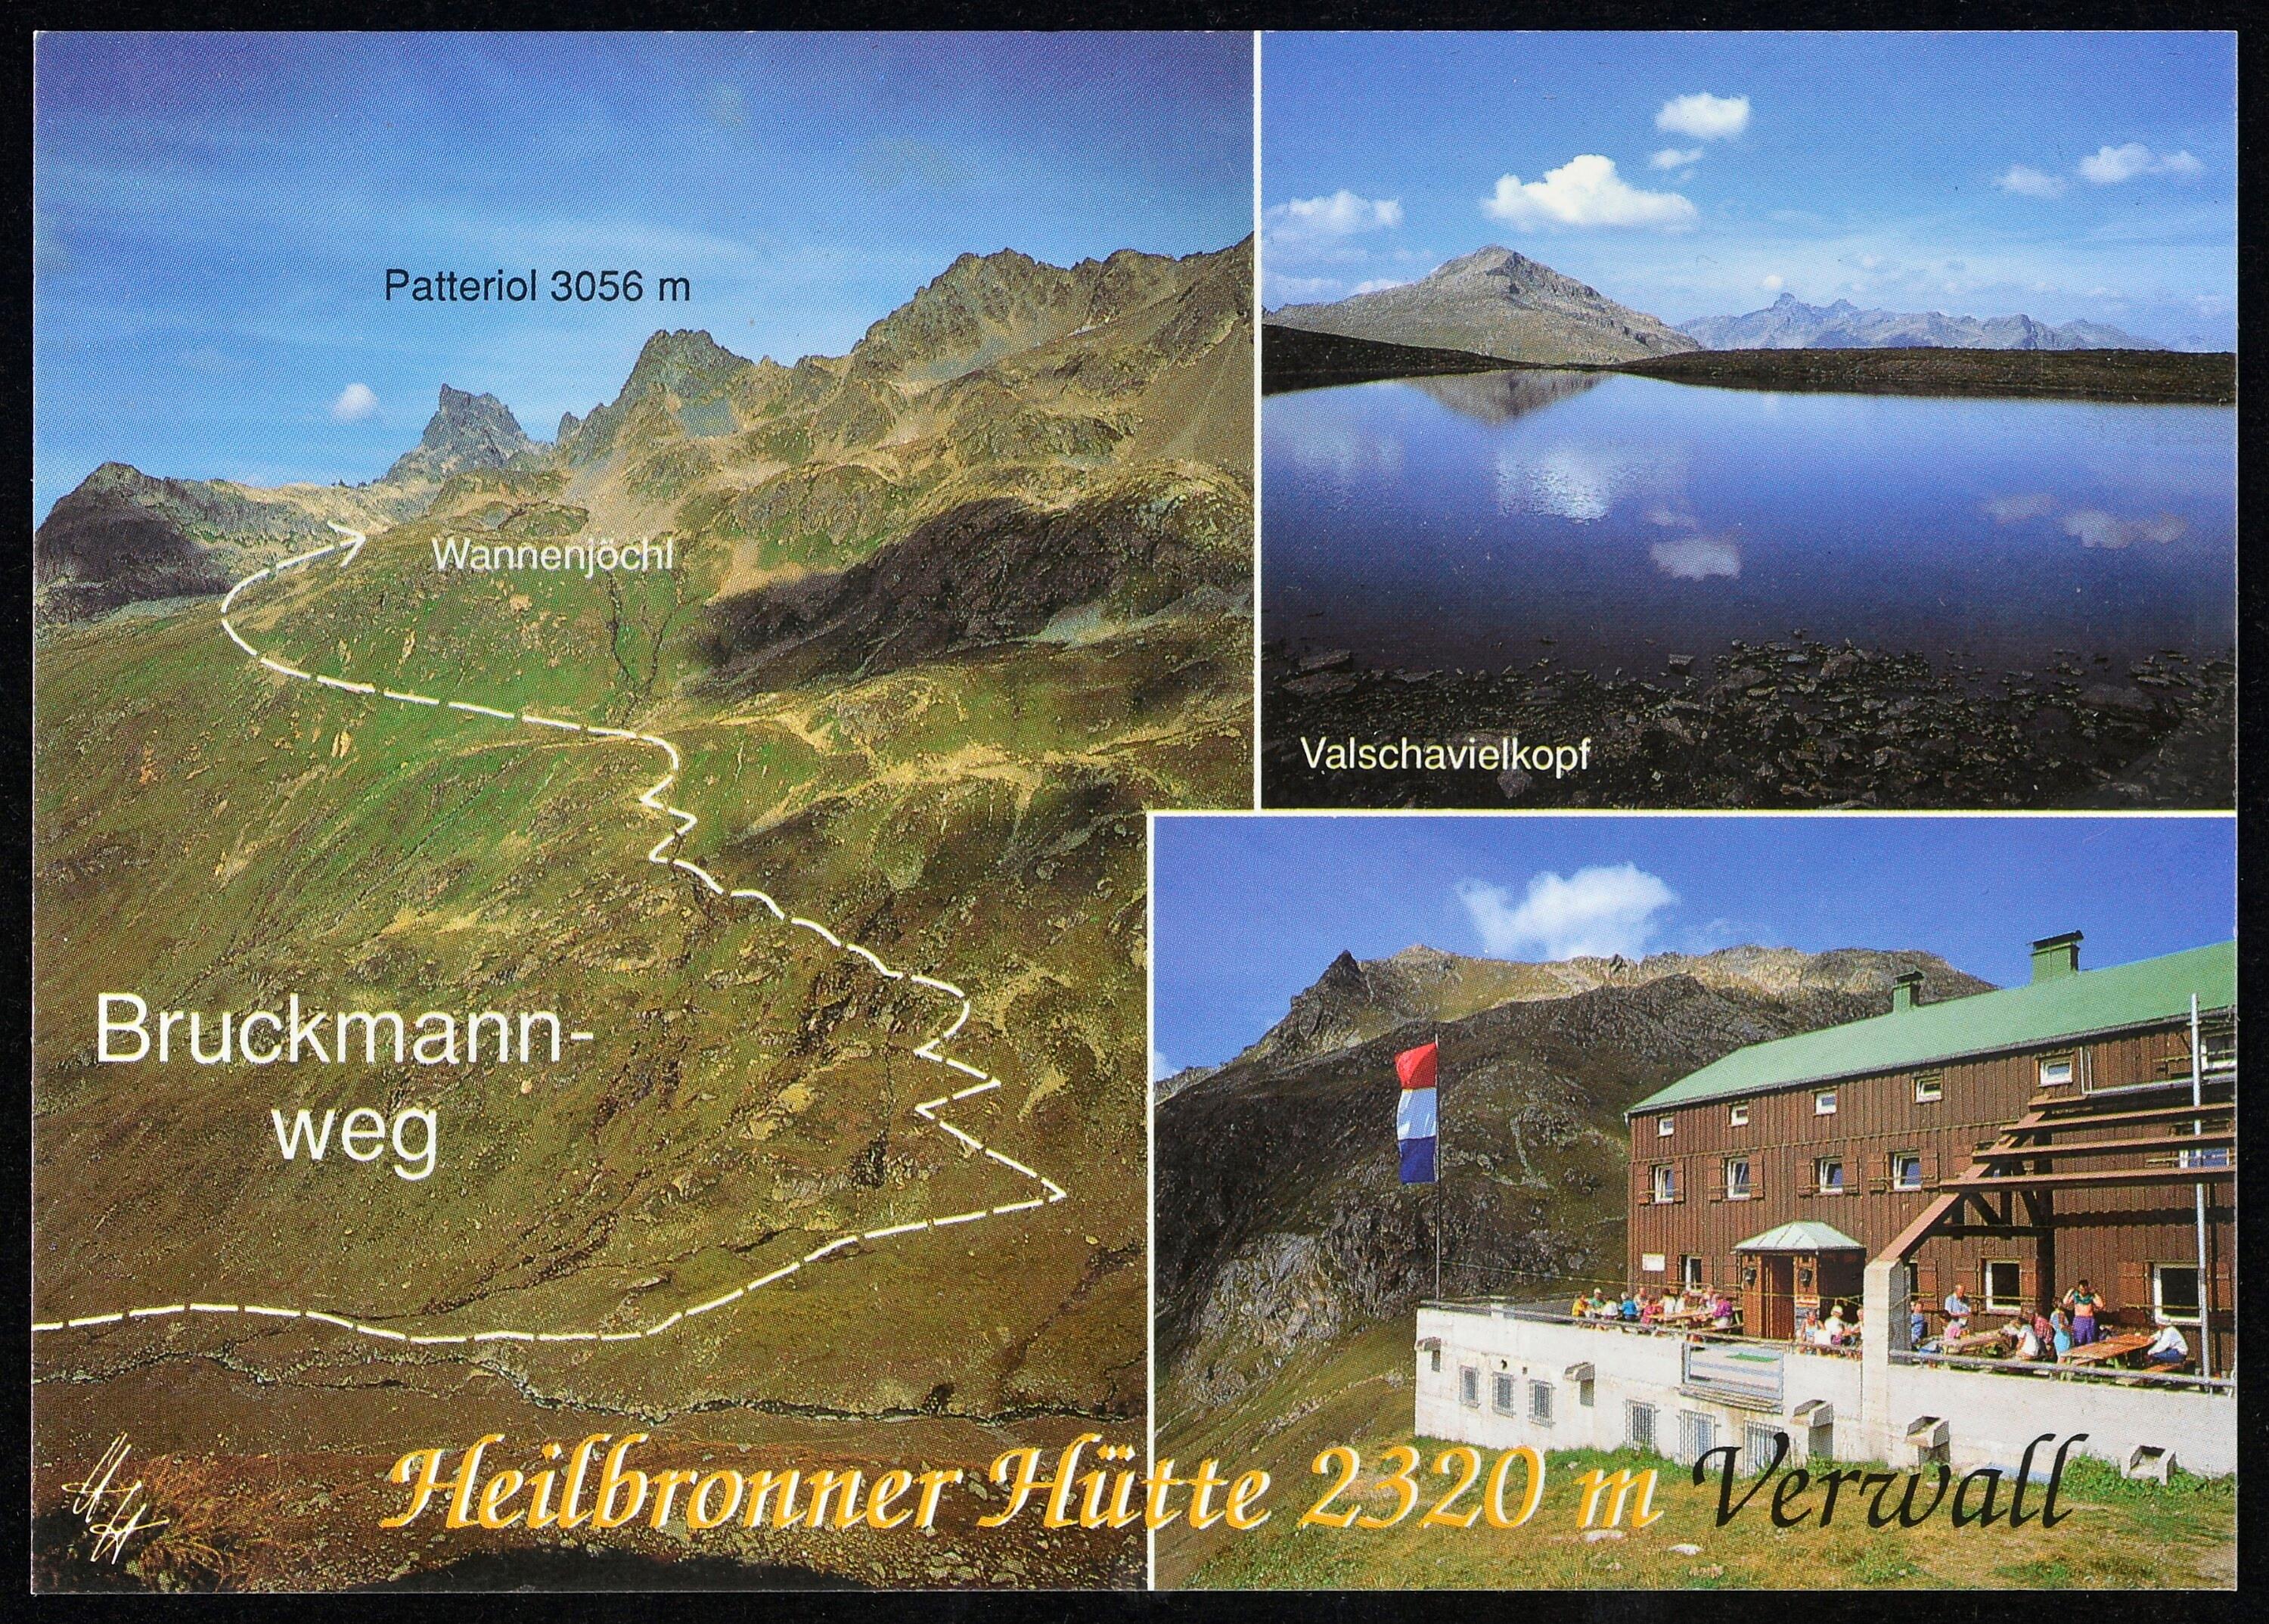 [Gaschurn Partenen] Heilbronner Hütte 2320 m Verwall></div>


    <hr>
    <div class=